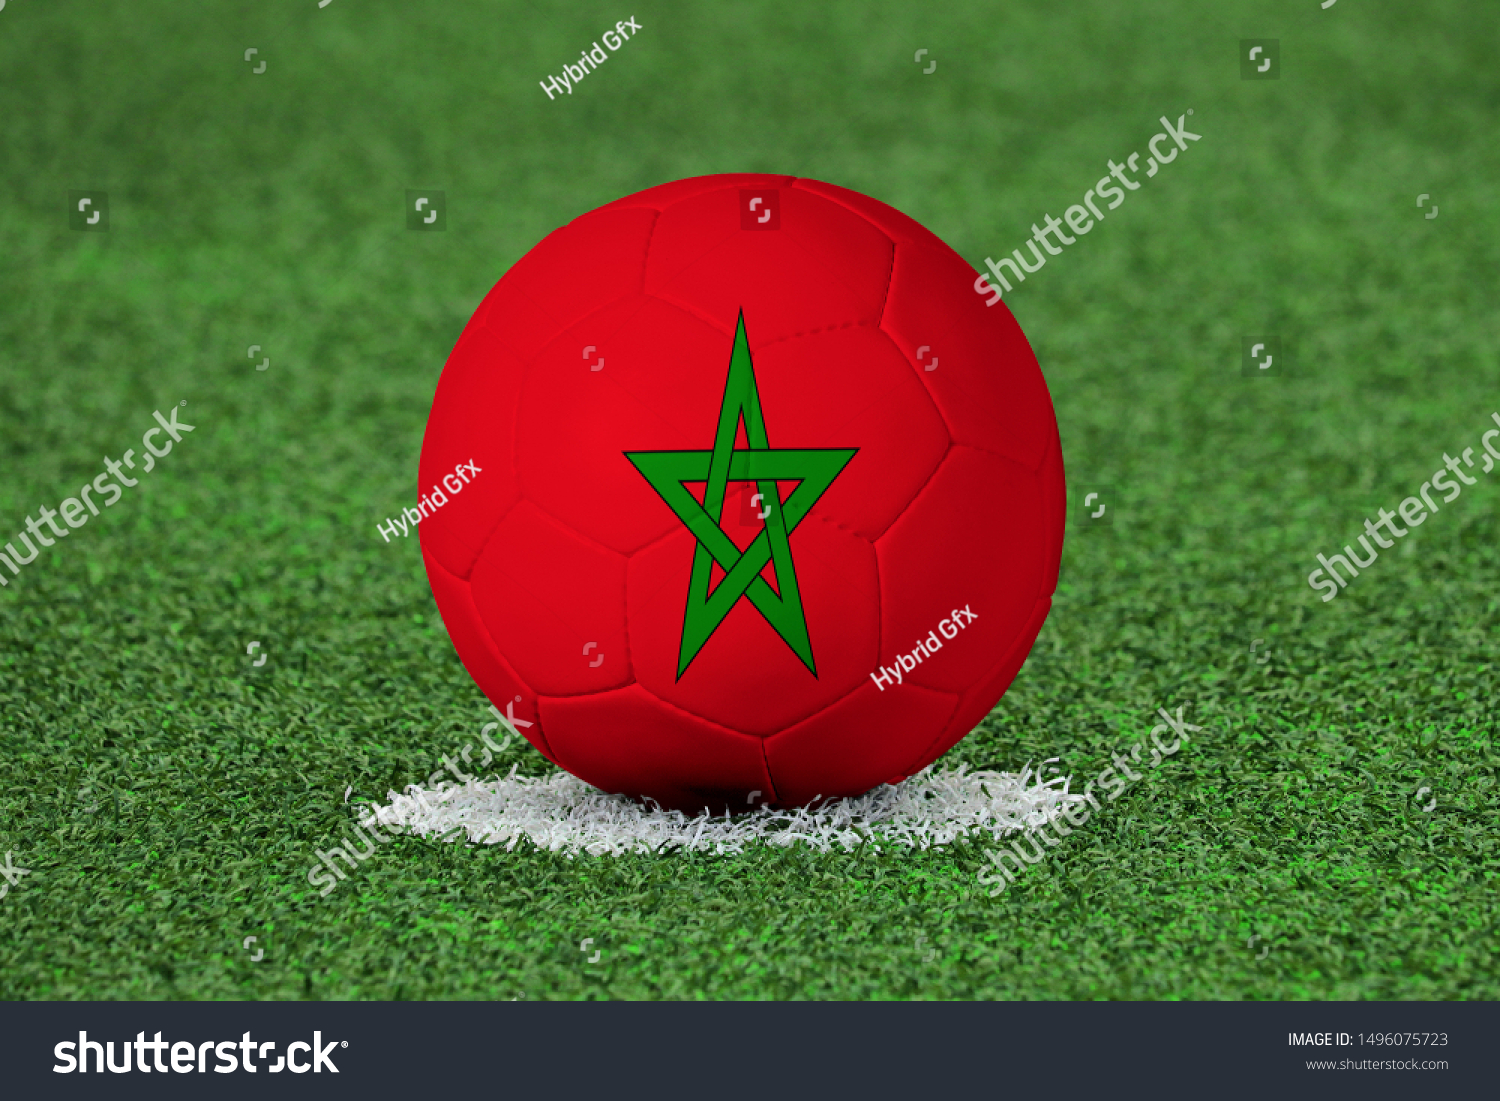 Flag of Morocco on Football Morocco Flag on soccer ball #1496075723